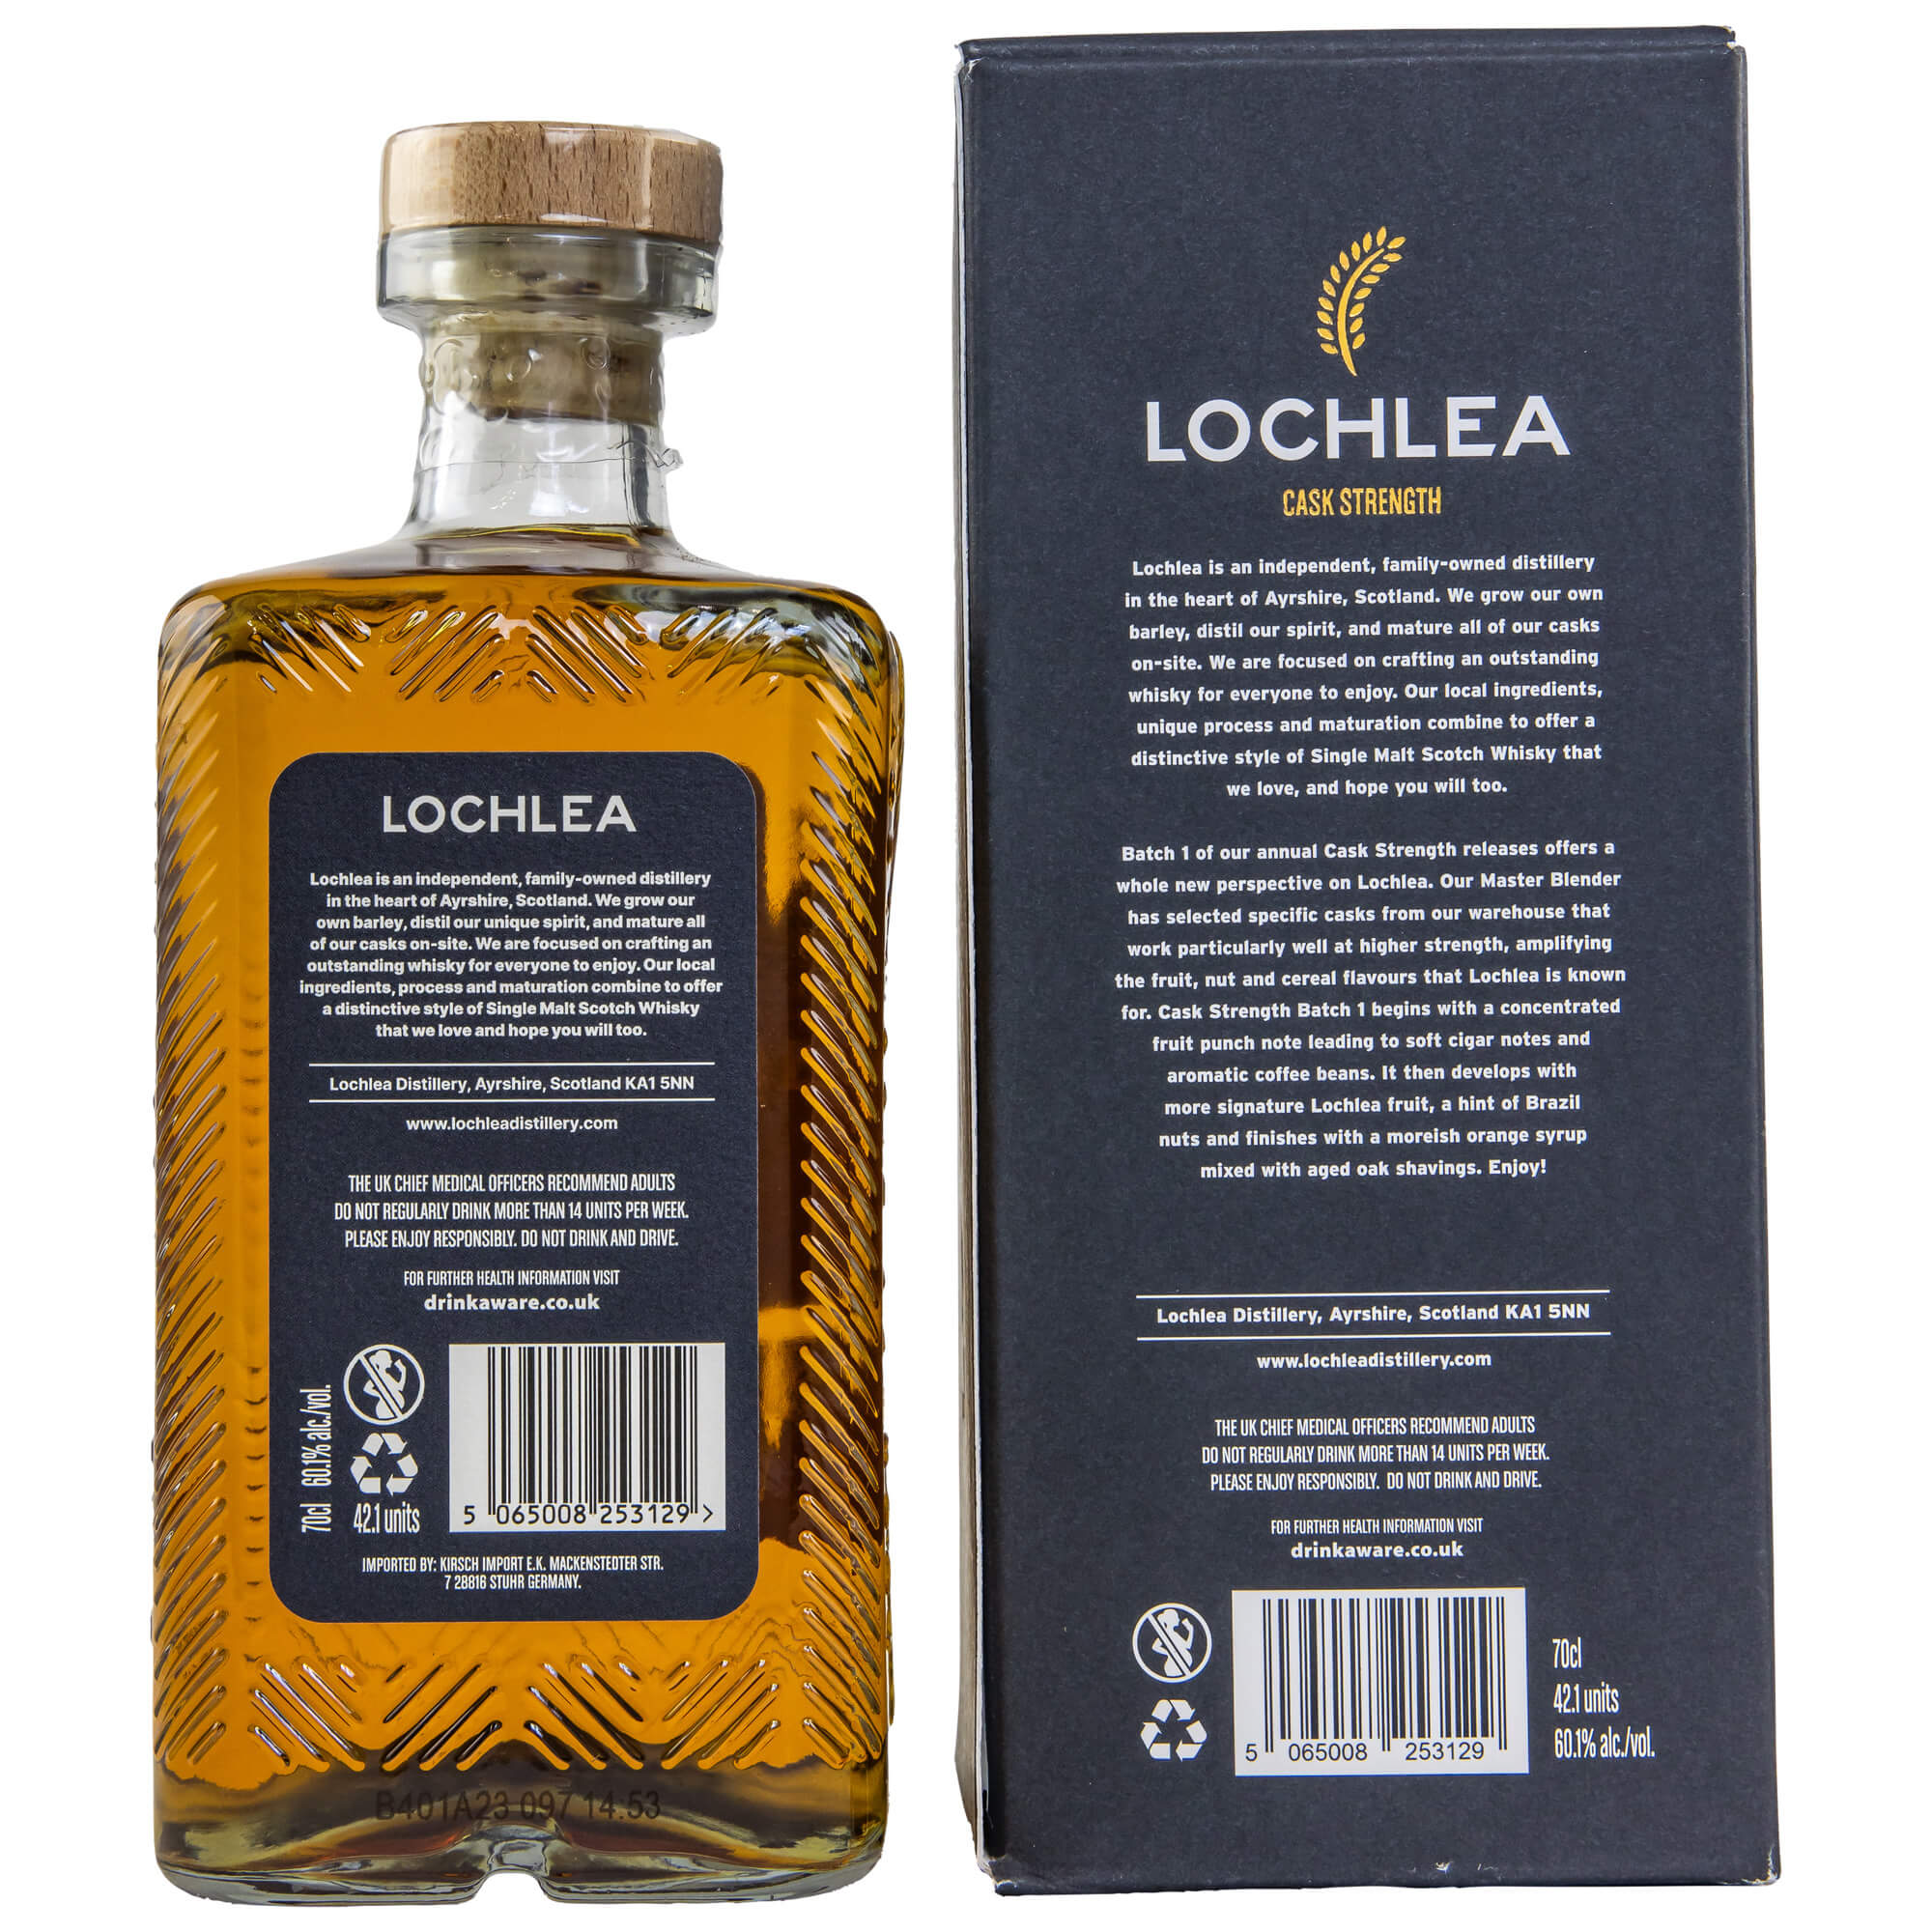 Lochlea Cask Strength Batch 1 Whisky